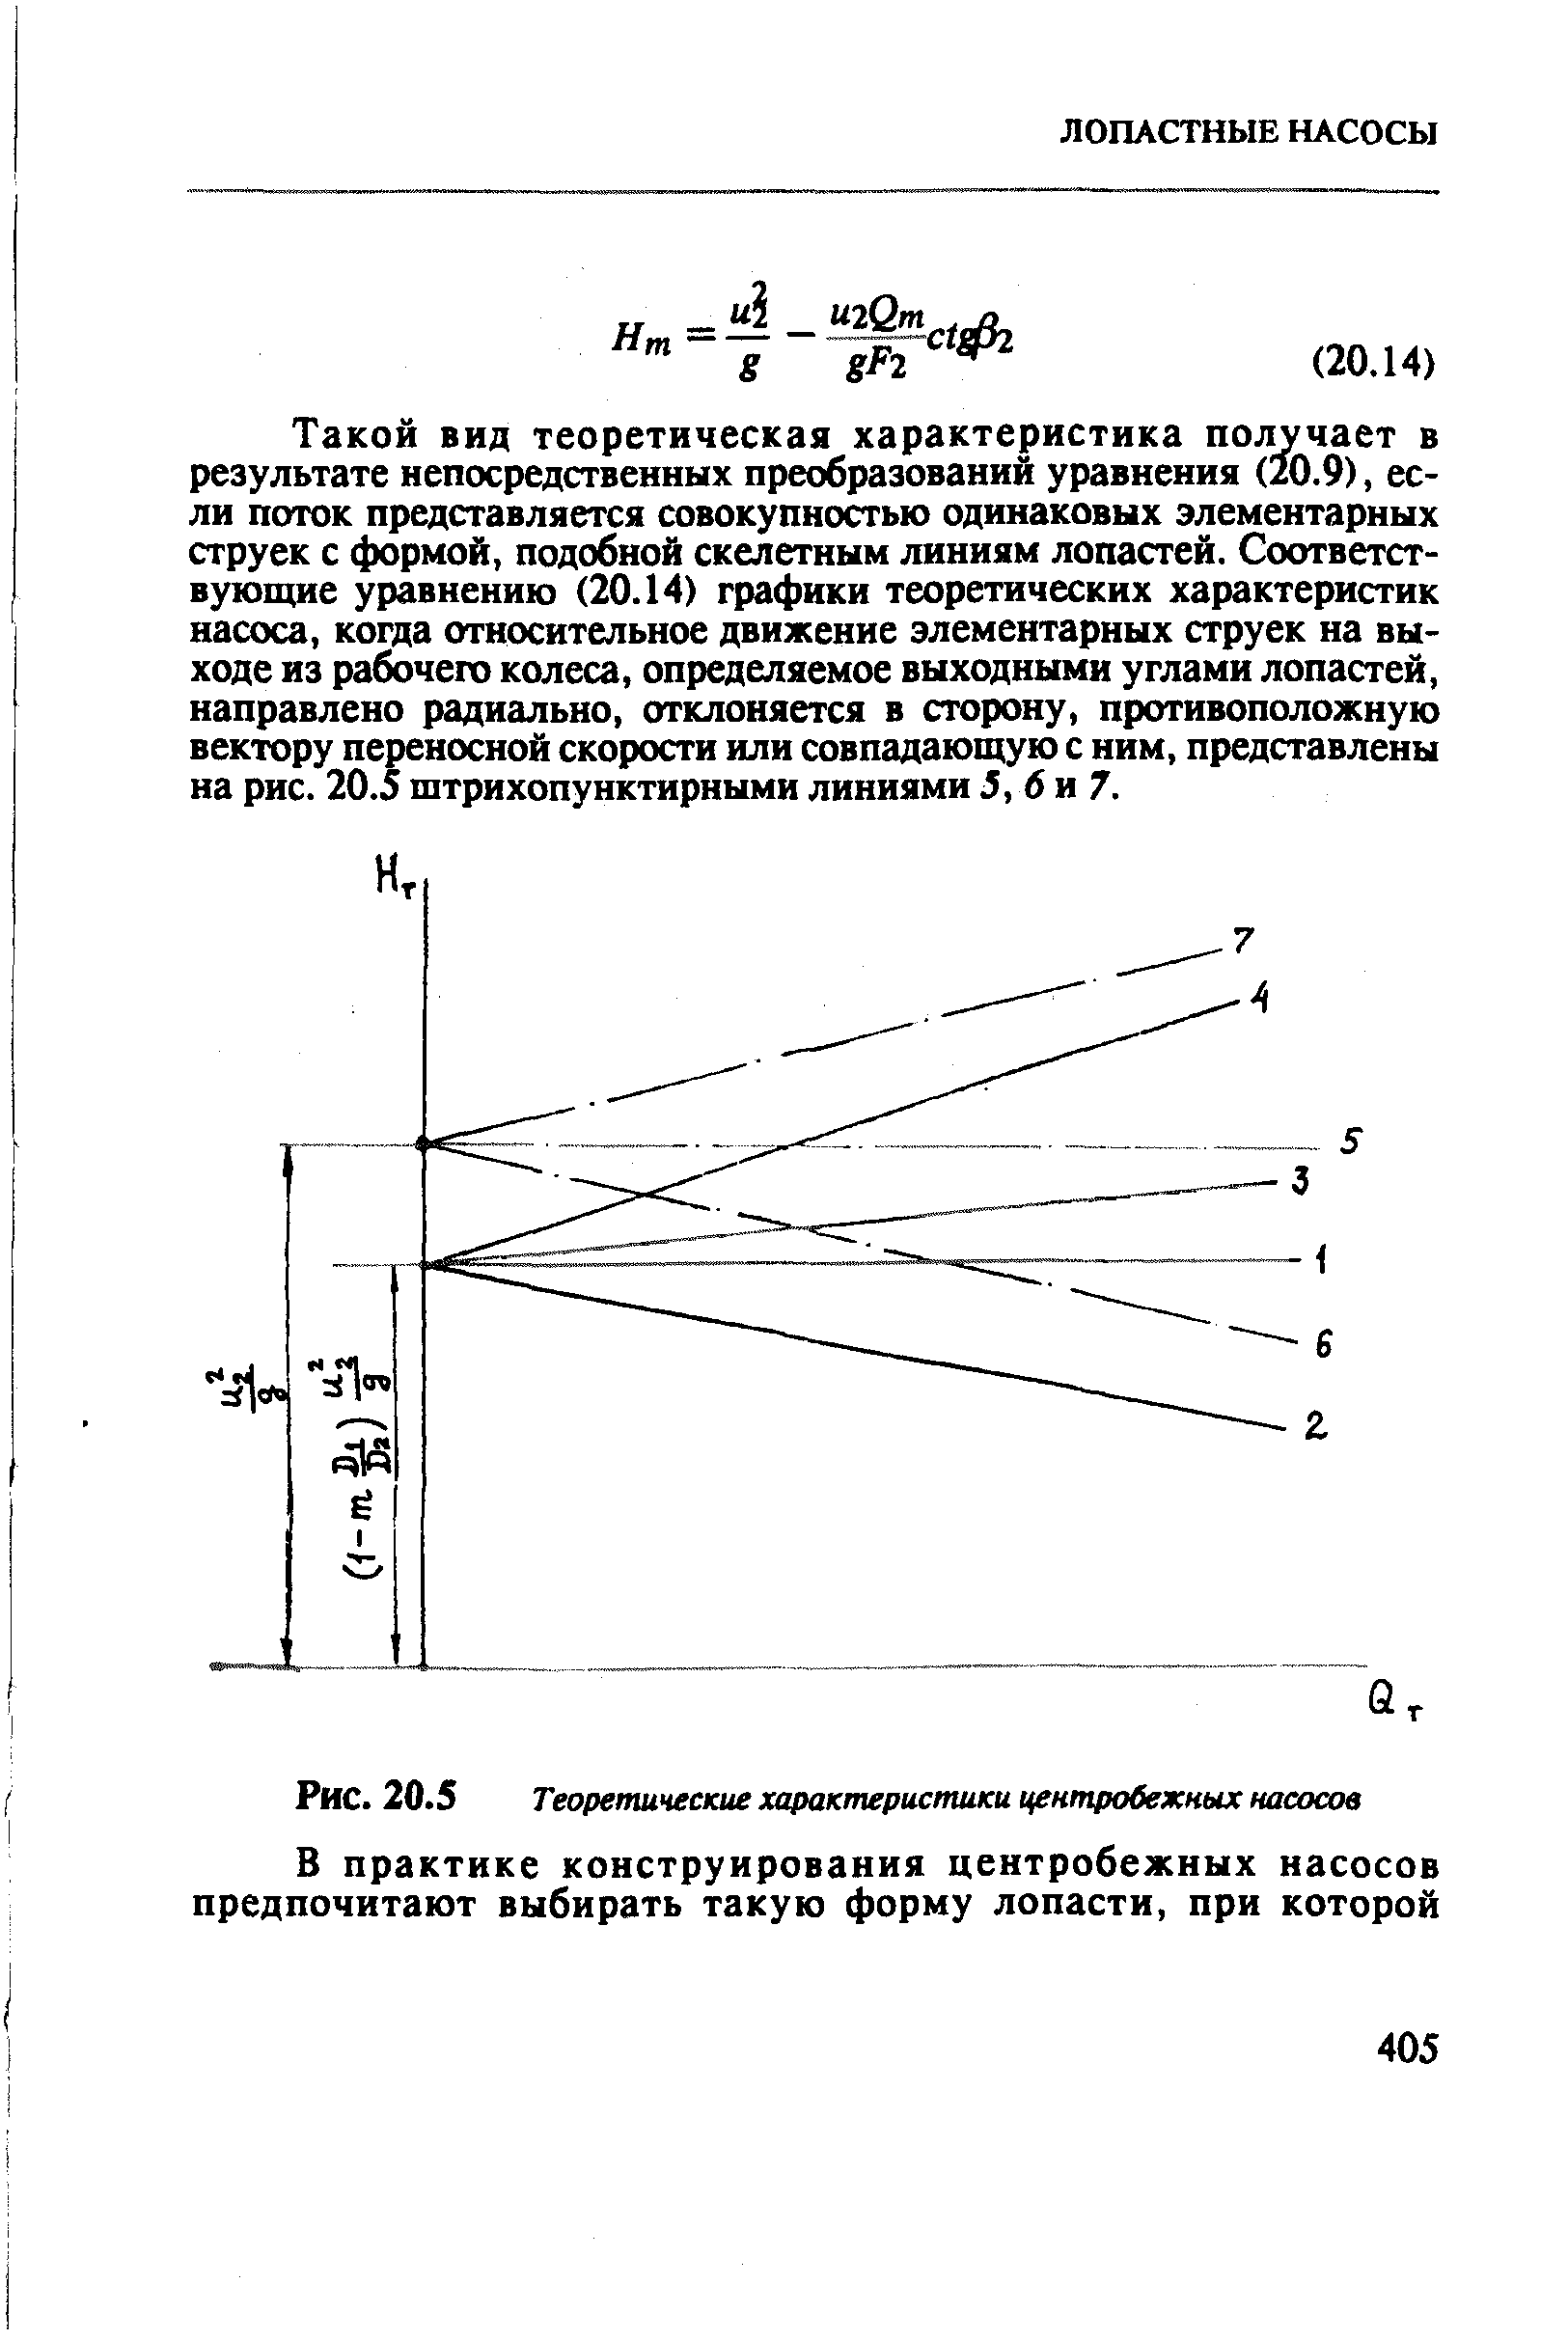 Рис. 20.5 Теоретические характеристики центробежных насосов
